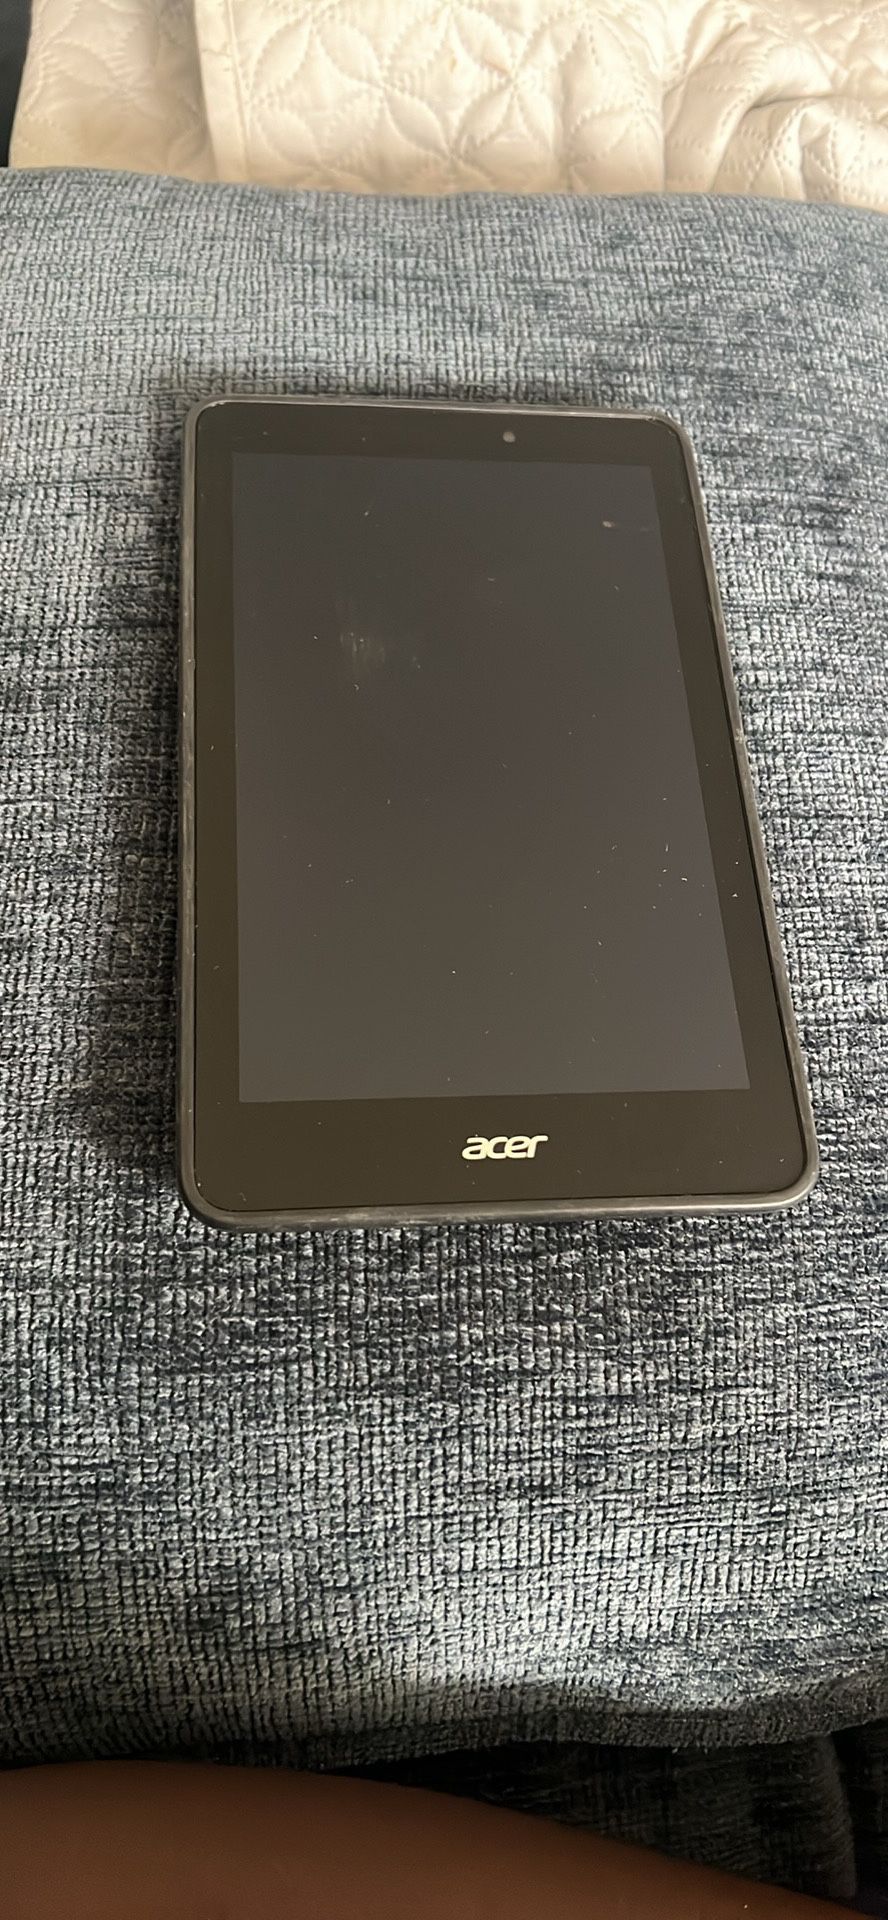 Acer nexus tablet